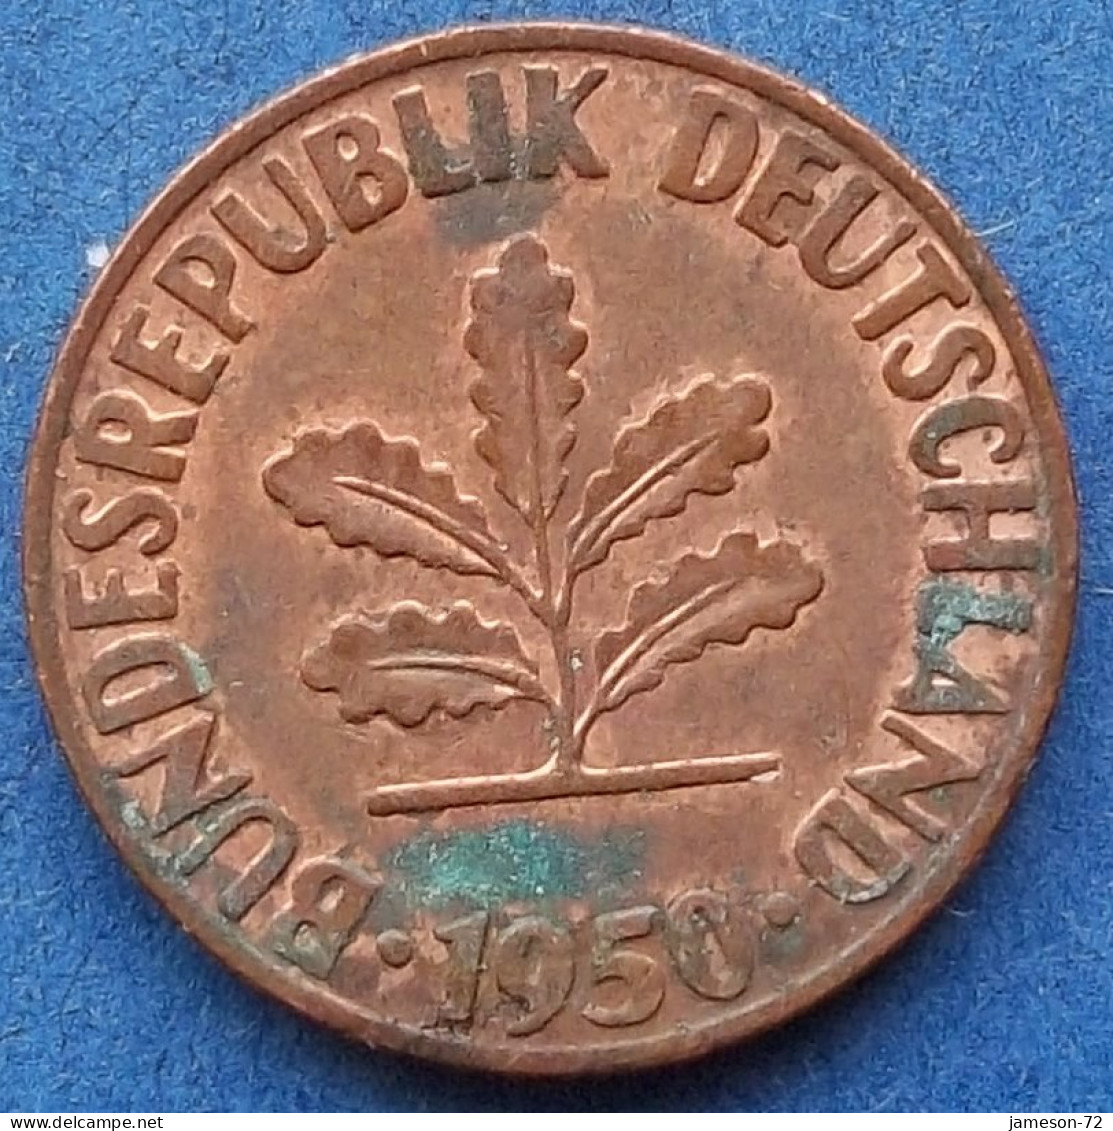 GERMANY - 1 Pfennig 1950 D KM# 105 Federal Republic Mark Coinage (1946-2002) - Edelweiss Coins - 1 Pfennig